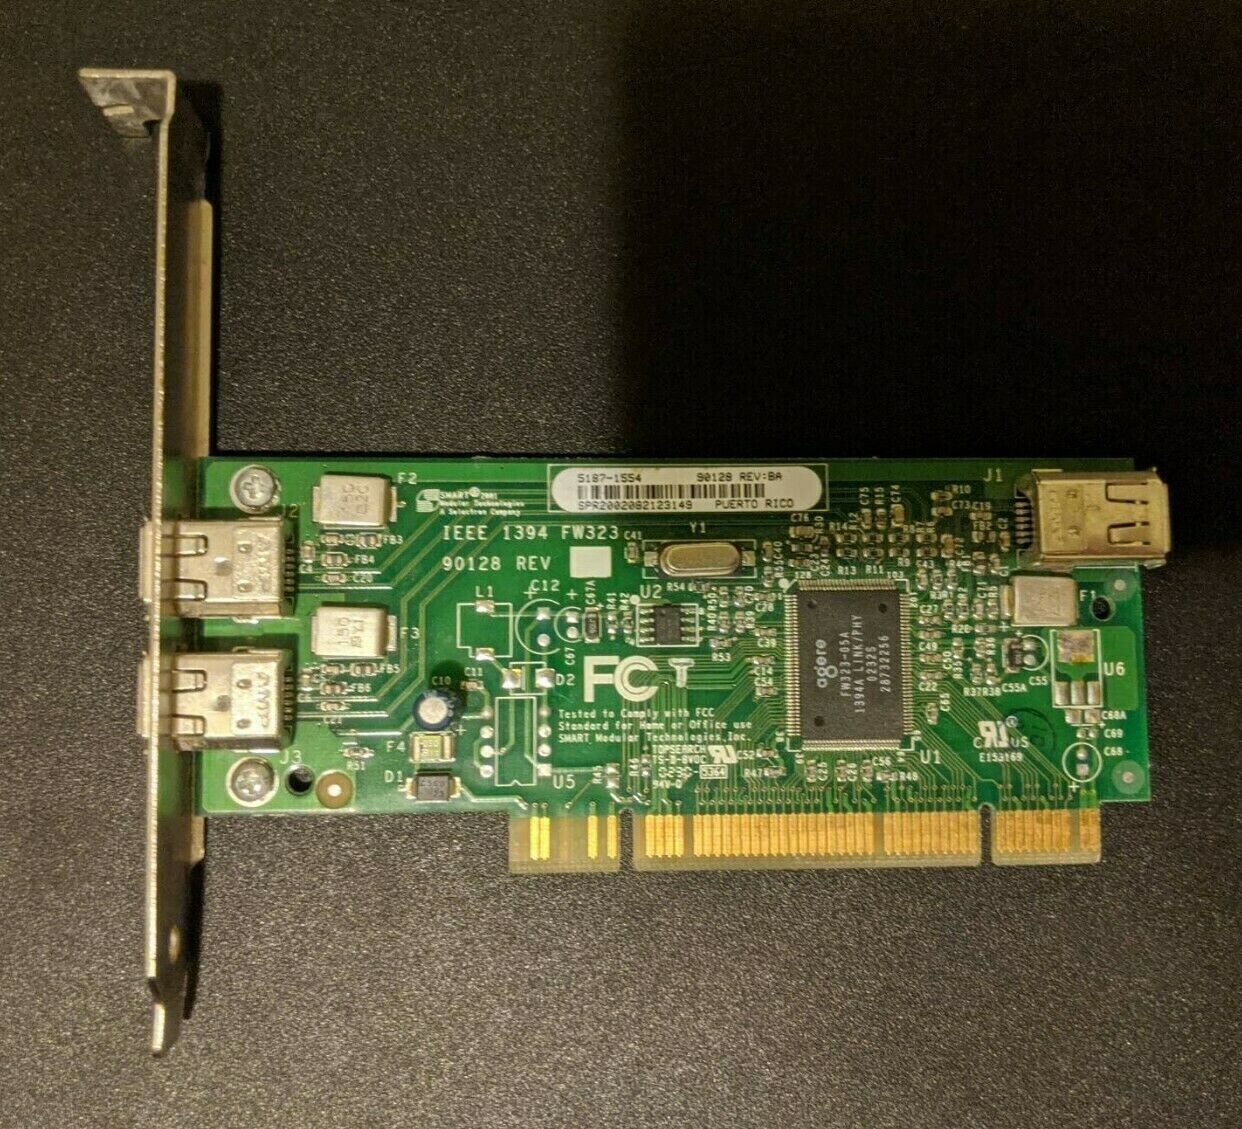 SMART Modular Technologies 3-port FireWire PCI Adapter 5187-1554 90128 Rev:BA